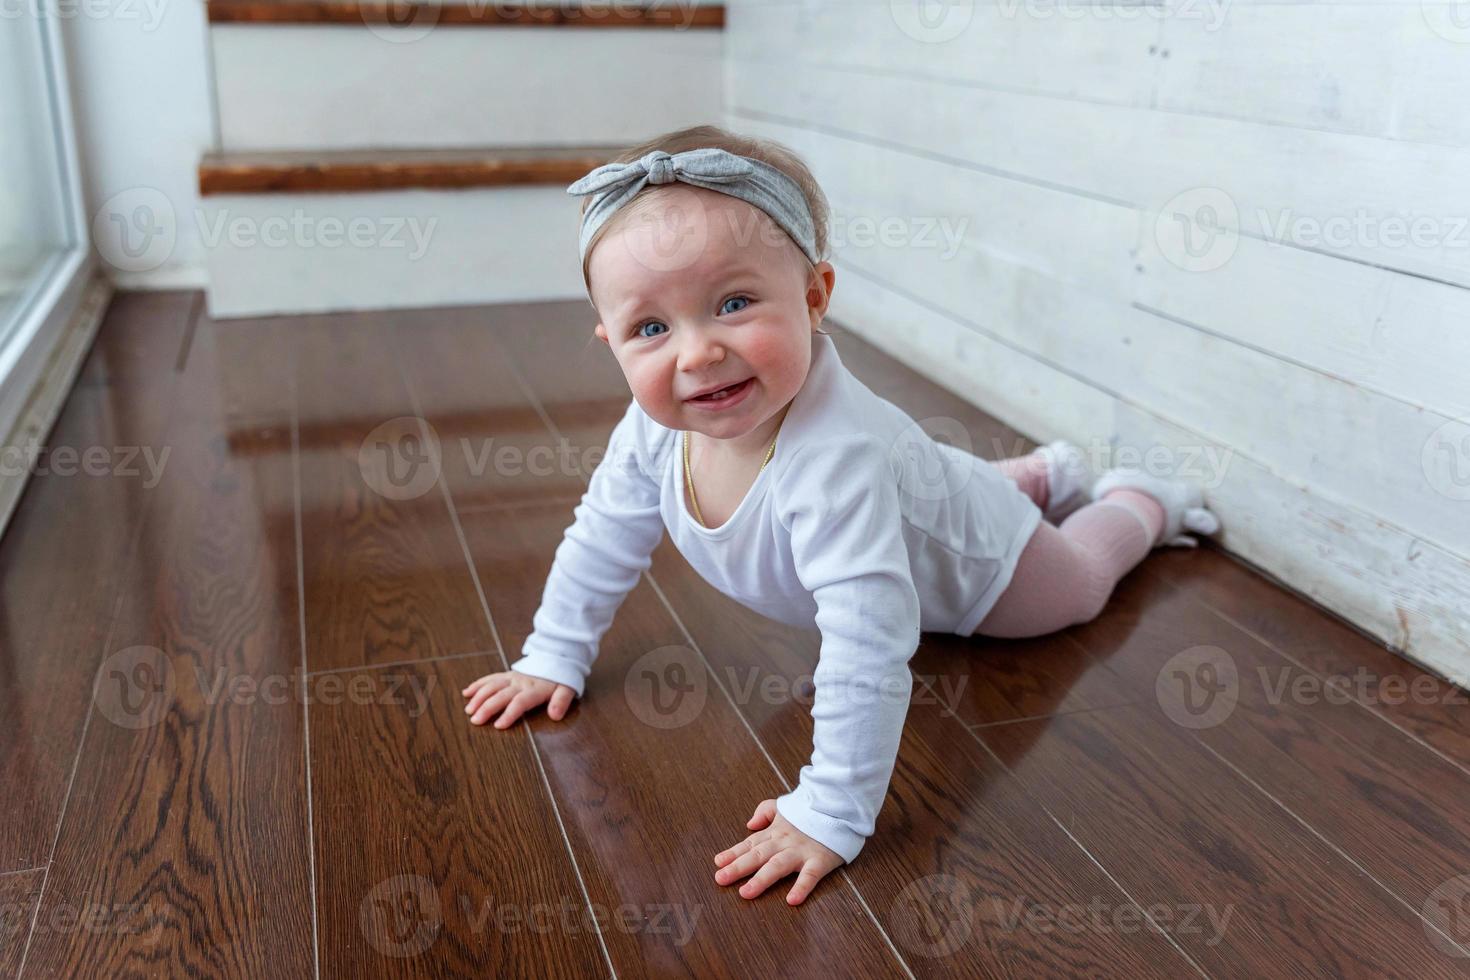 liten krypande bebis flicka ett år gammal lokaliserings på golv i ljus ljus levande rum nära fönster leende och skrattande foto